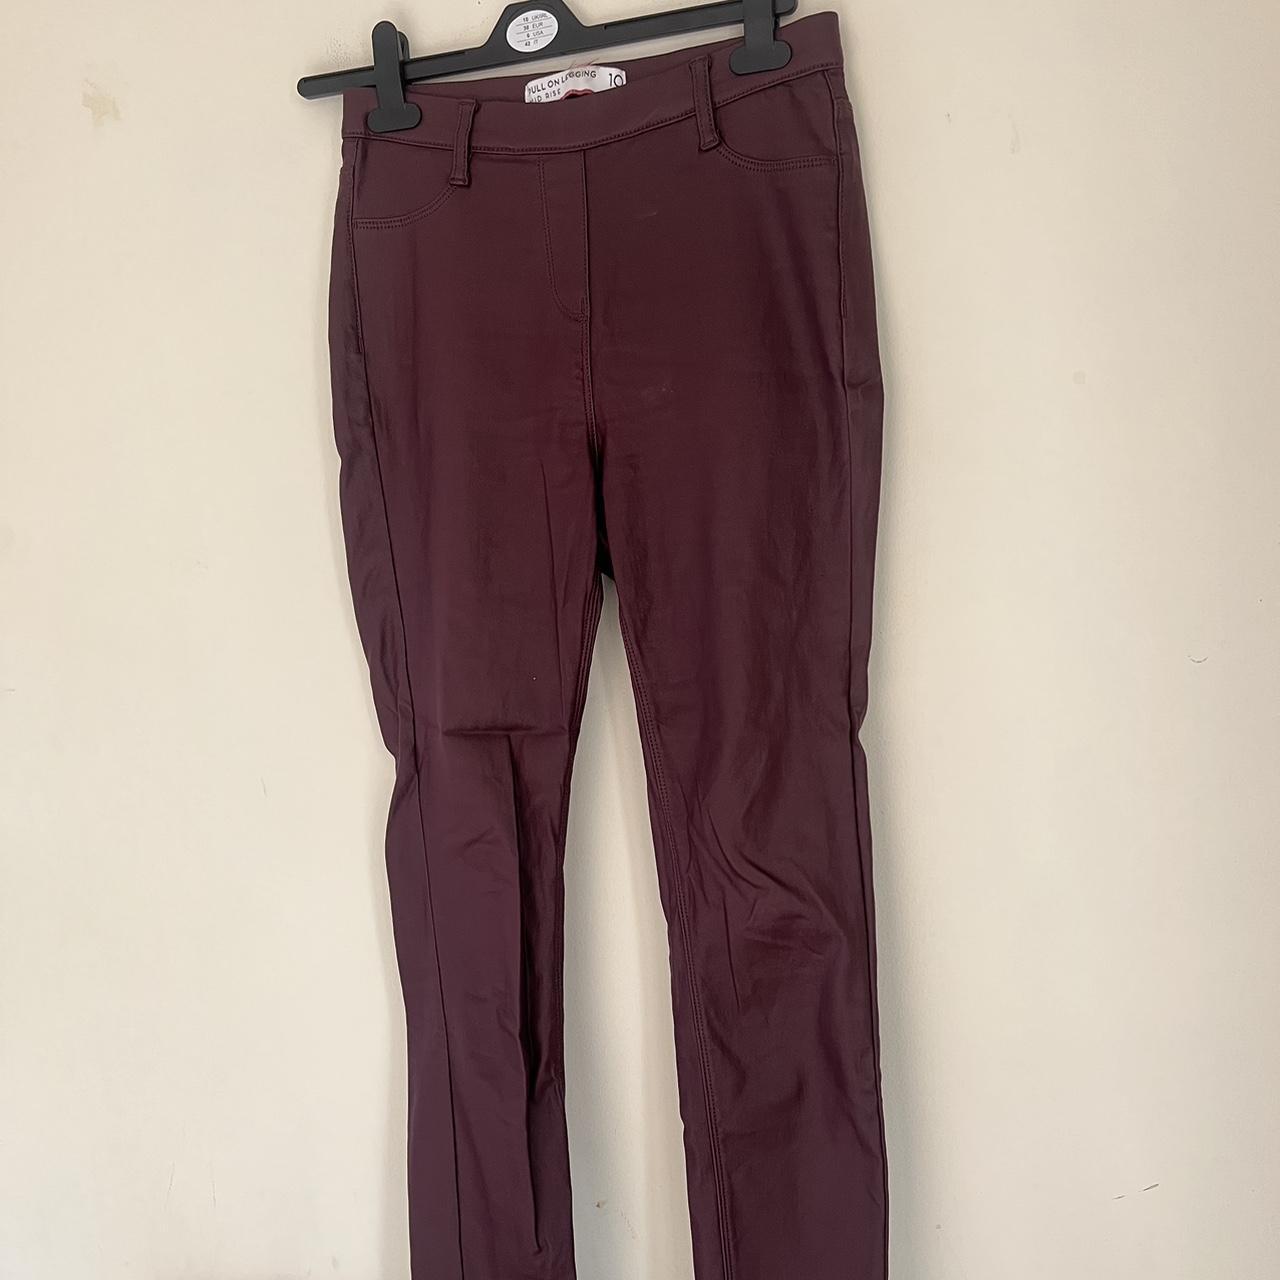 PLT burgundy faux leather leggings. Brand new, - Depop